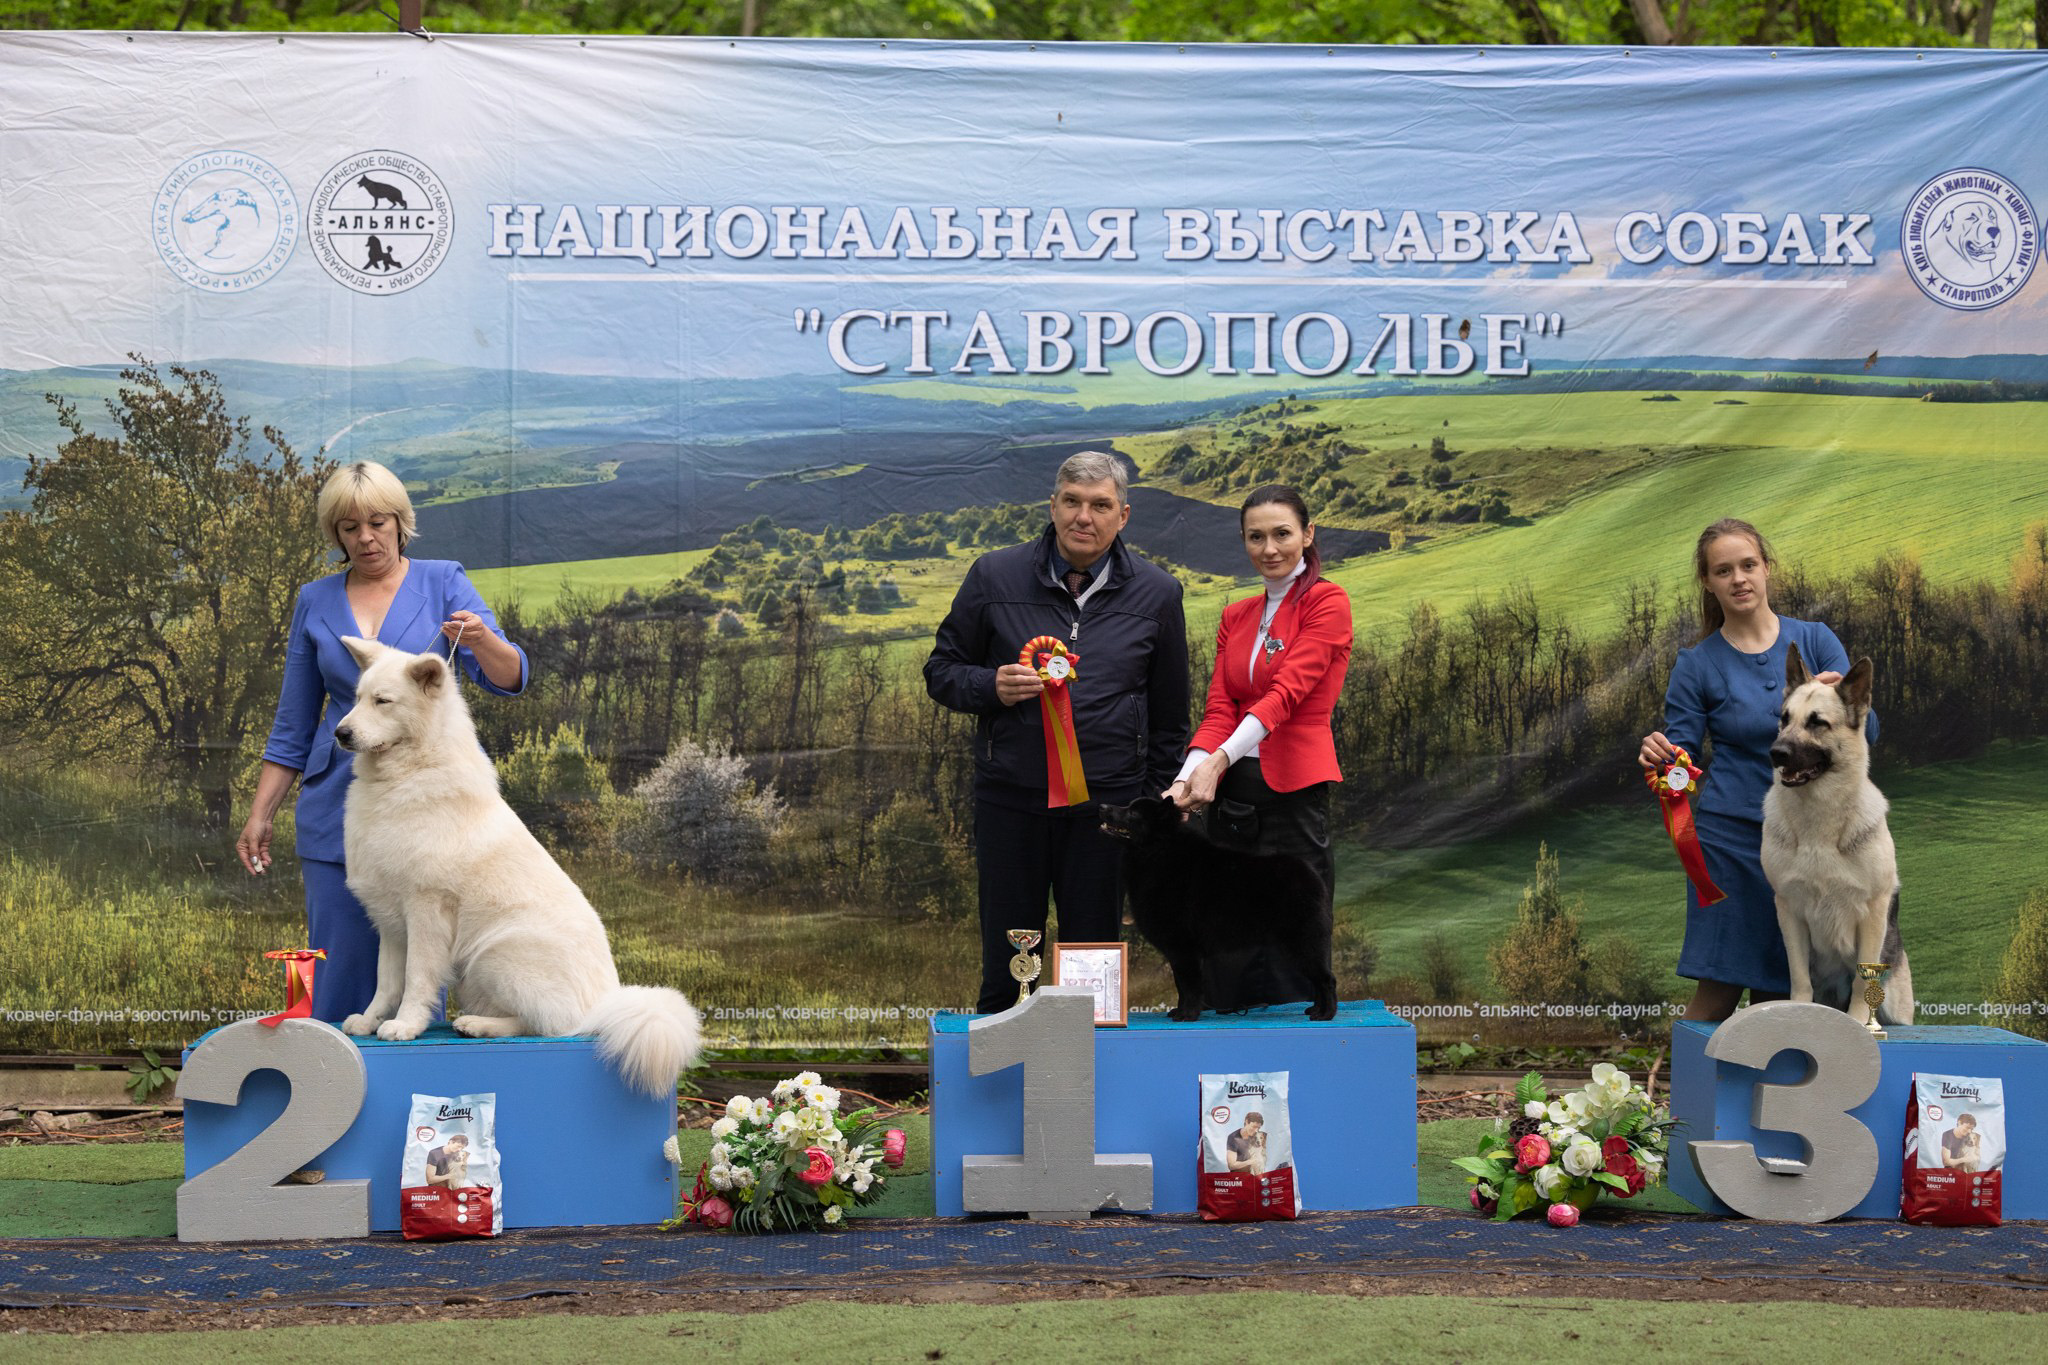 Выставка собак в Саврополе, кинологический клуб Альянс, победители породы